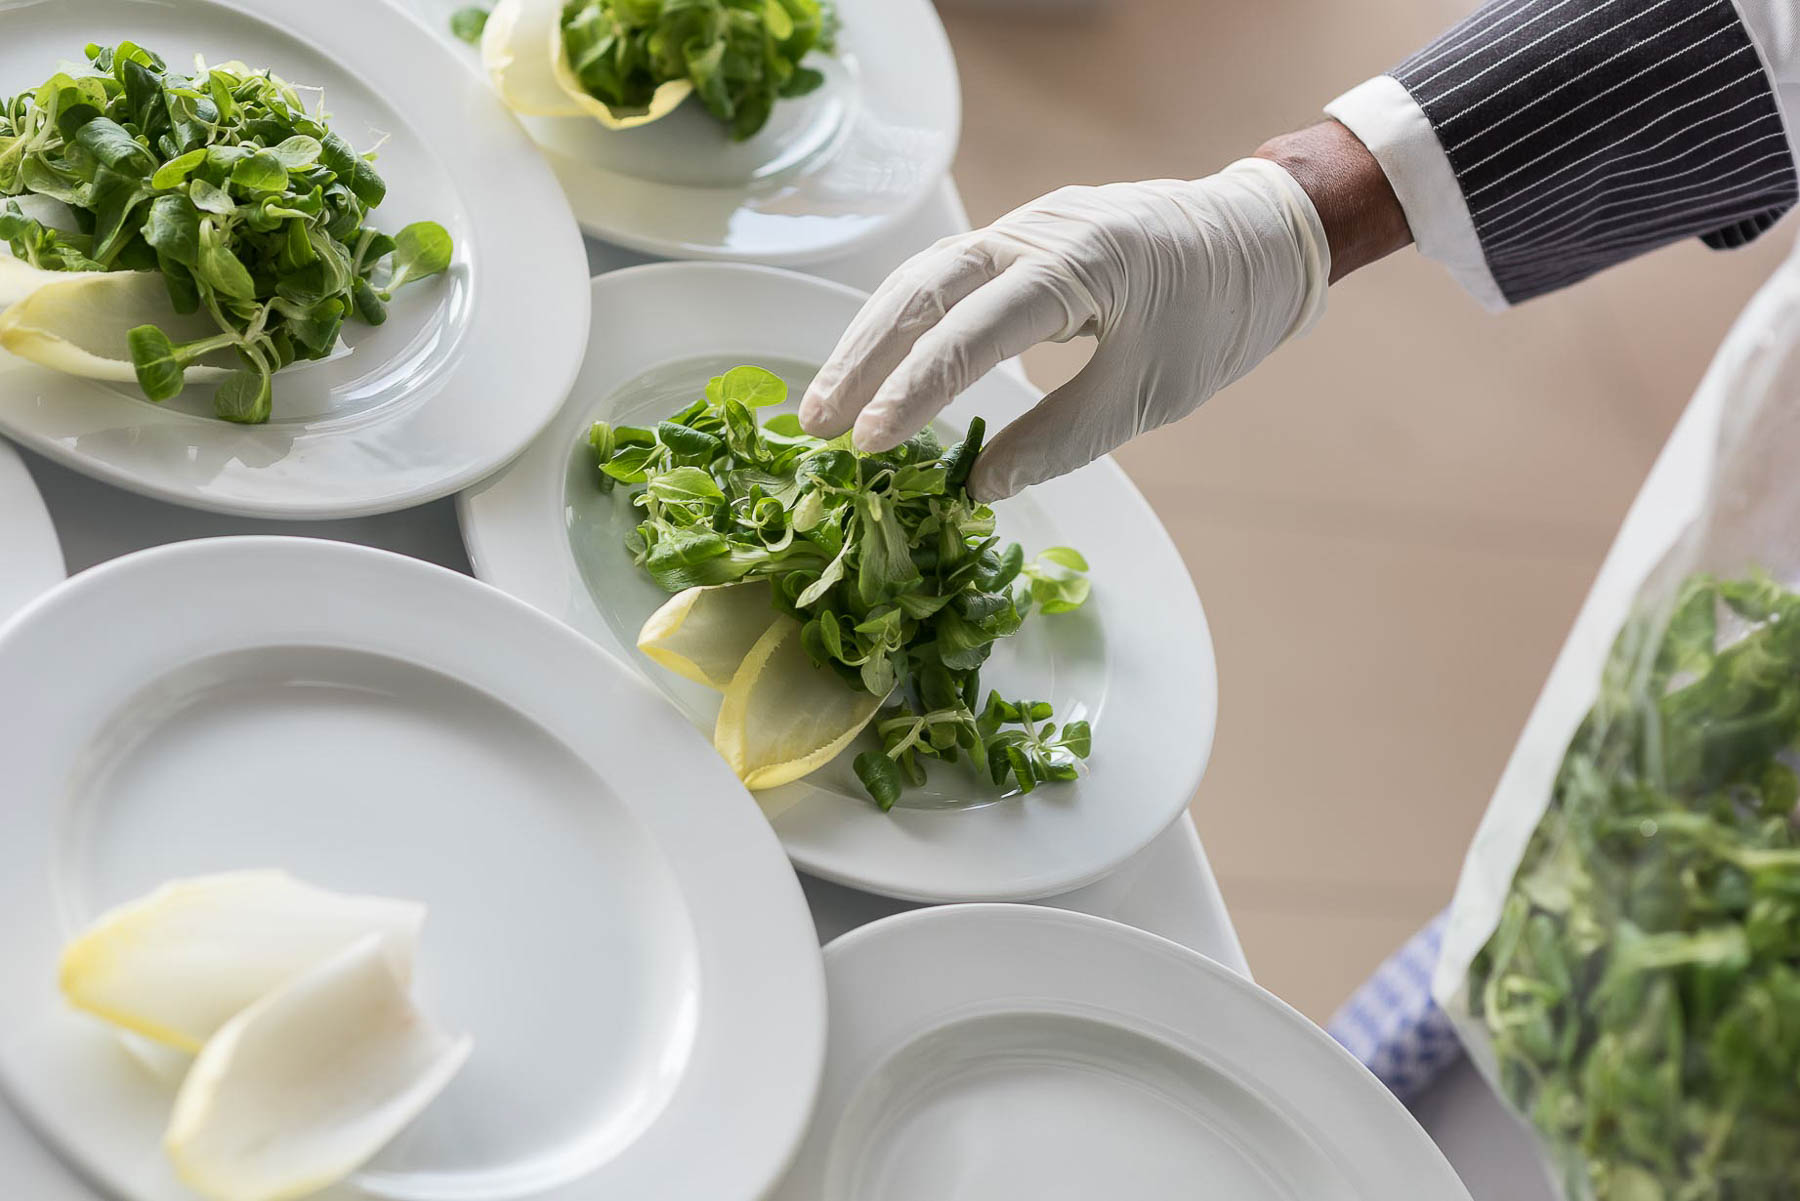 Blattsalat wird auf den Tellern mit Handschuhen dekoriert.